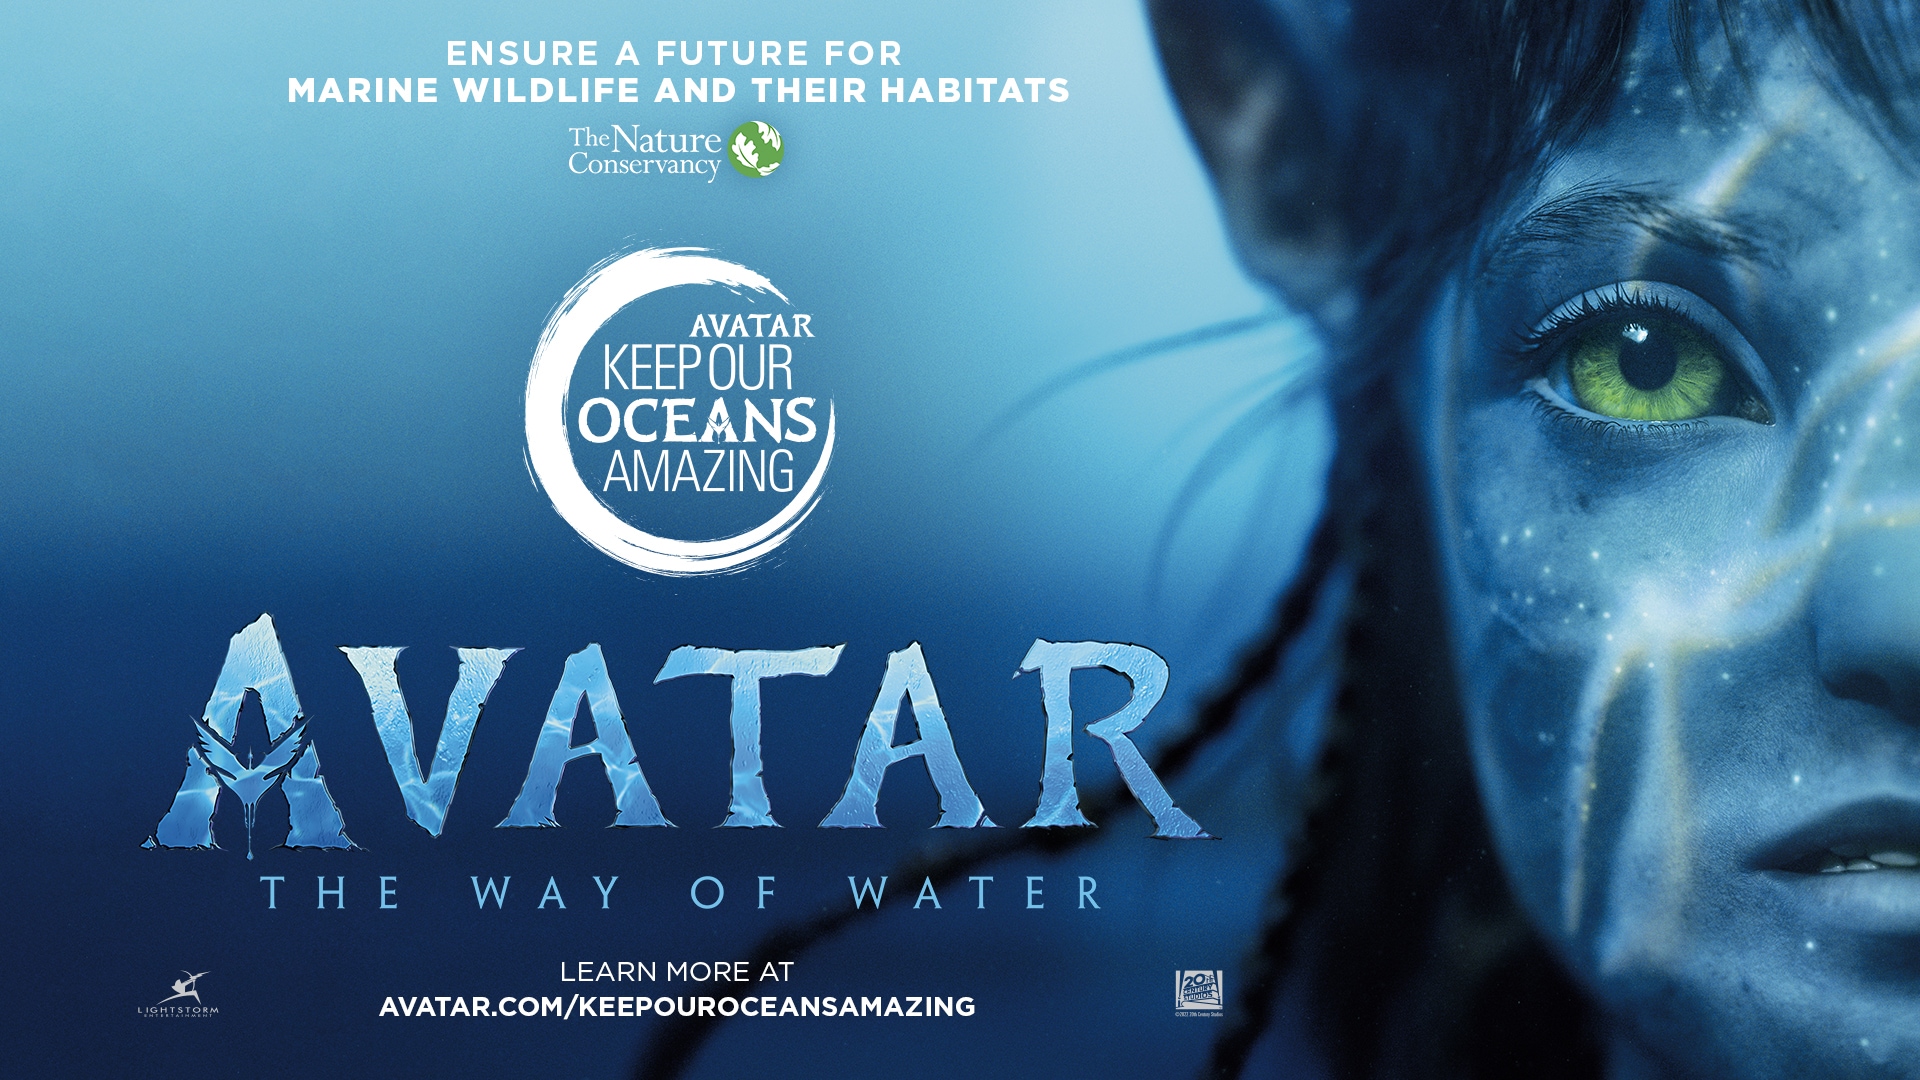 Avatar.com. The Official Avatar Website for Avatar News